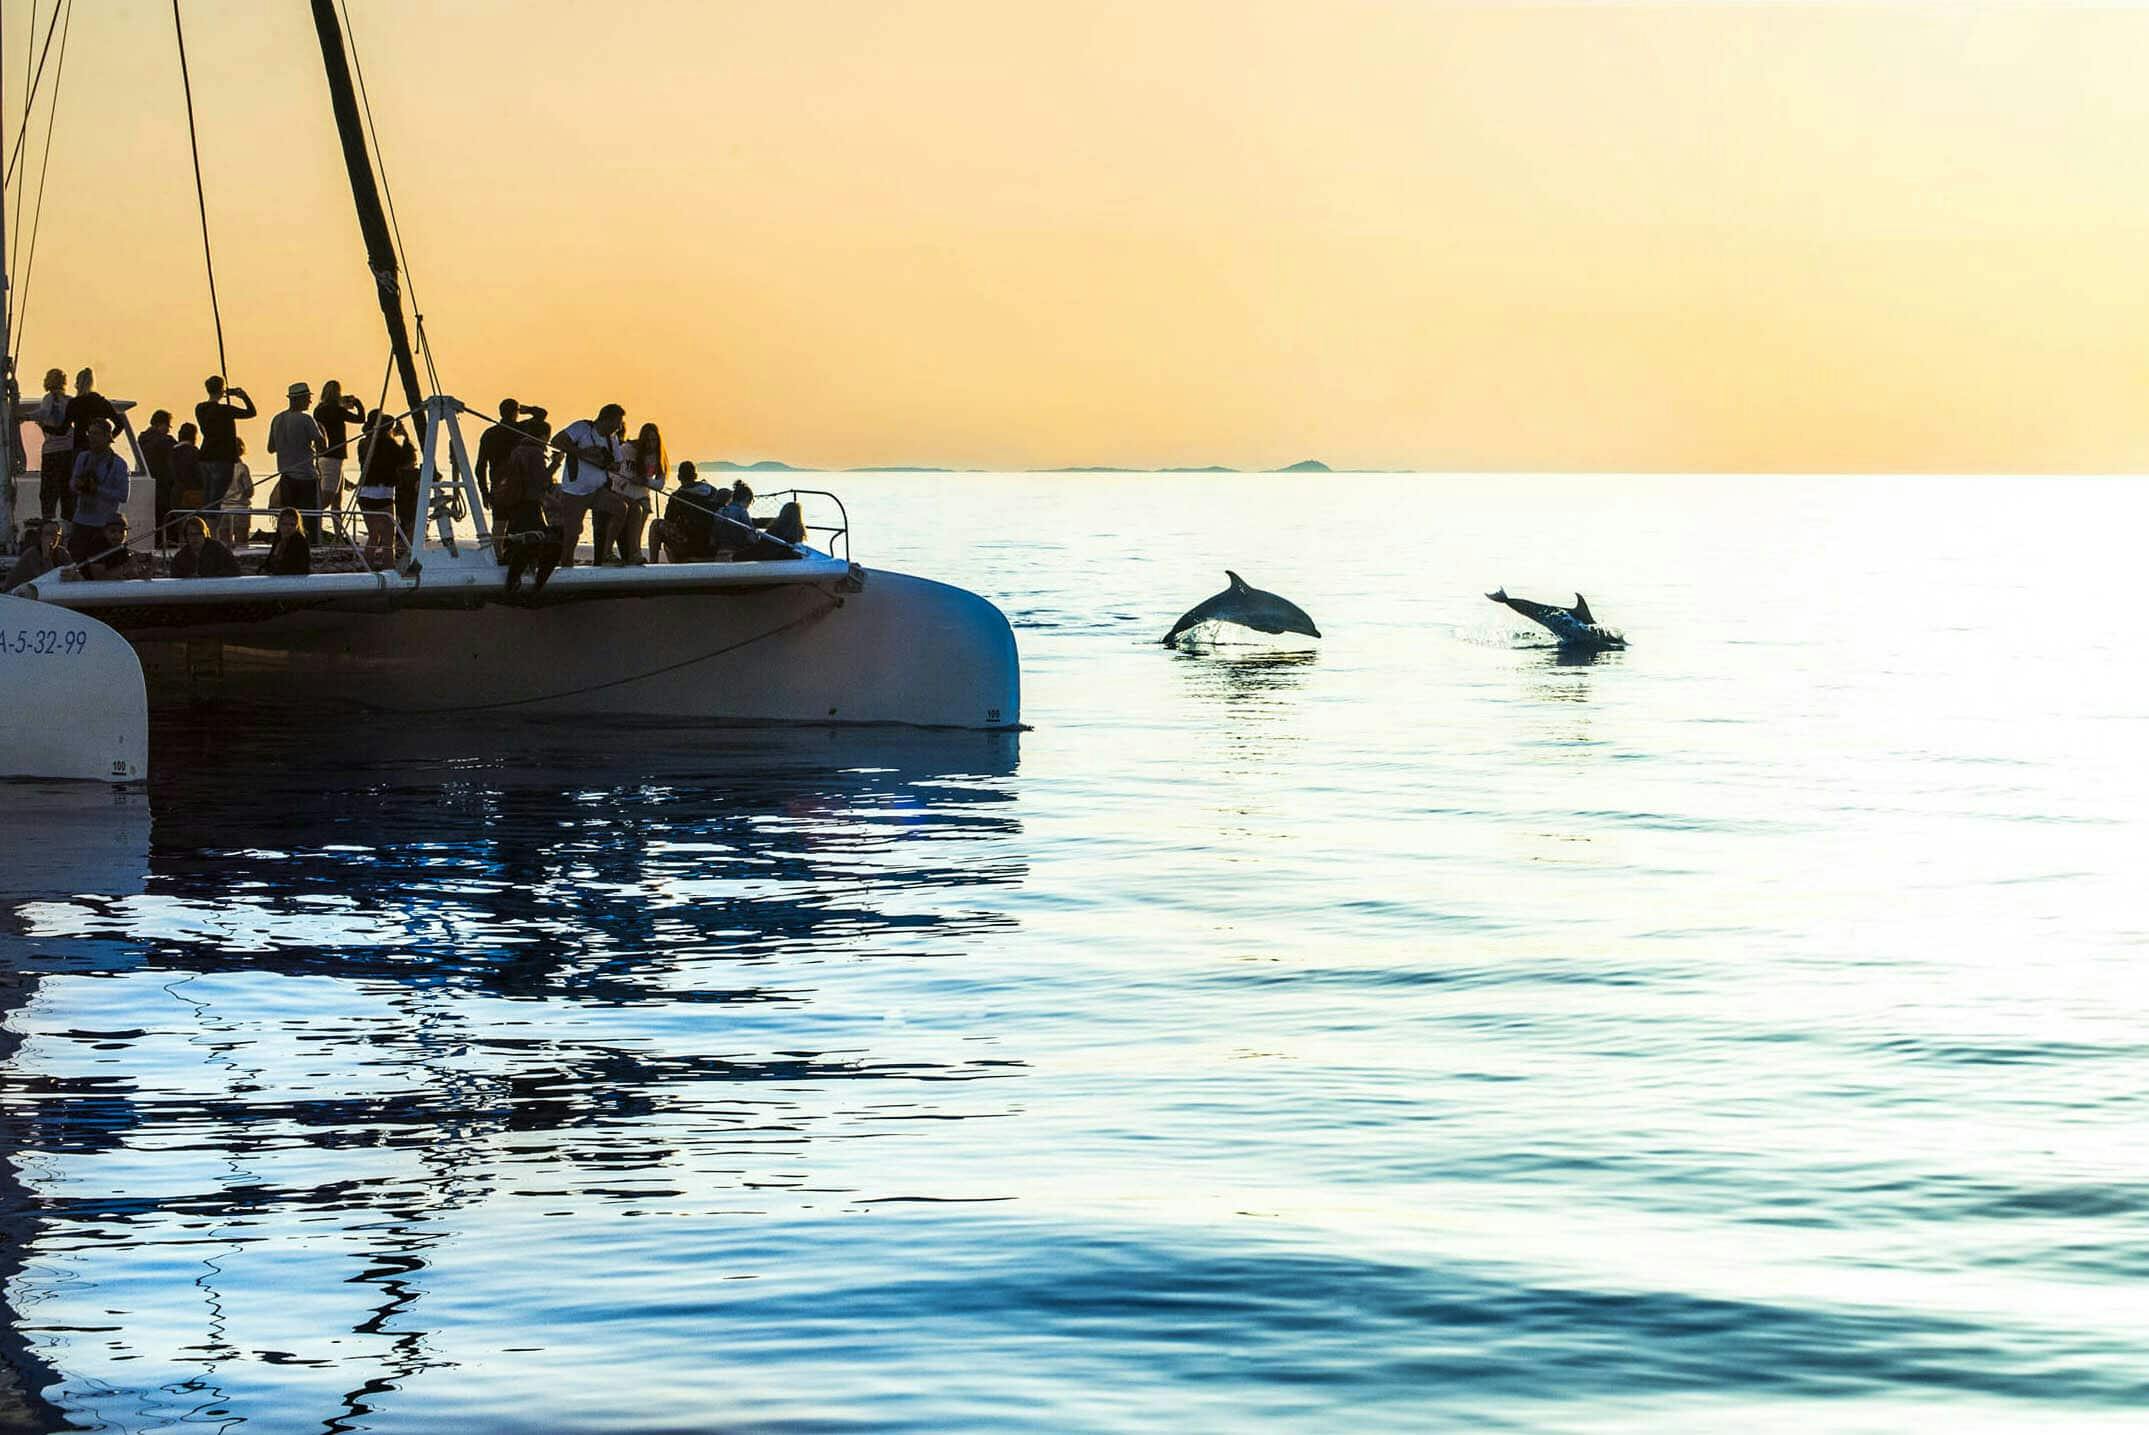 Crociera con osservazione dei delfini a cura di Mayurca Yachting